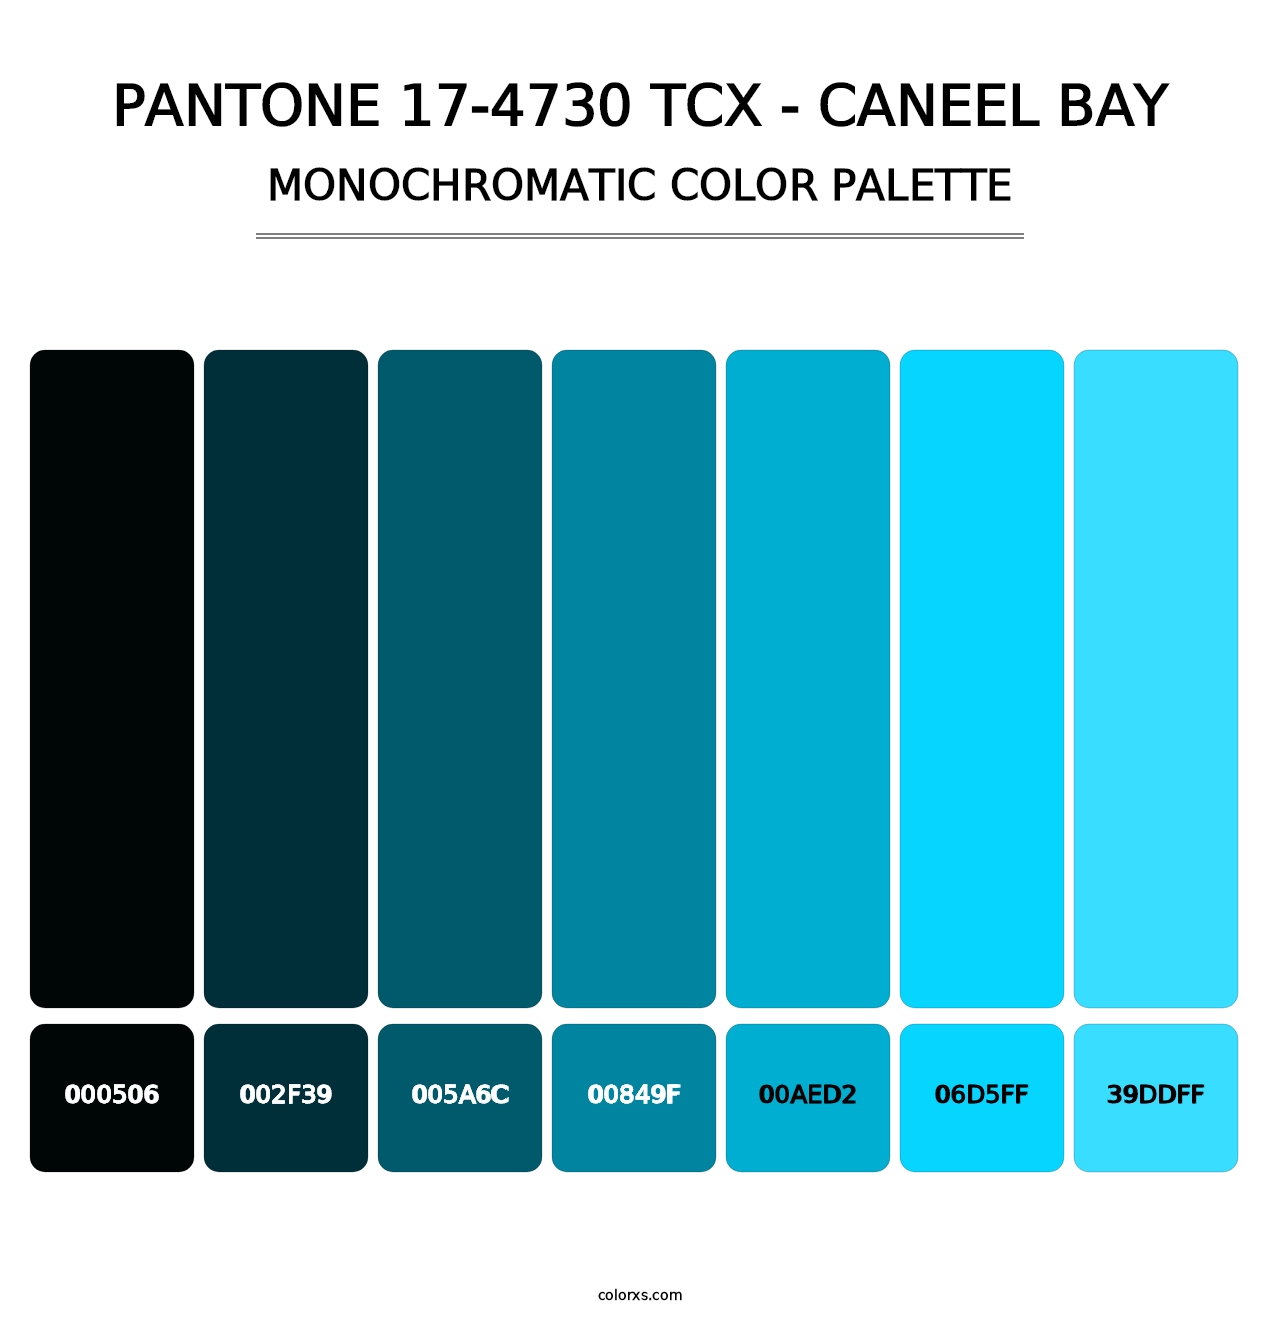 PANTONE 17-4730 TCX - Caneel Bay - Monochromatic Color Palette